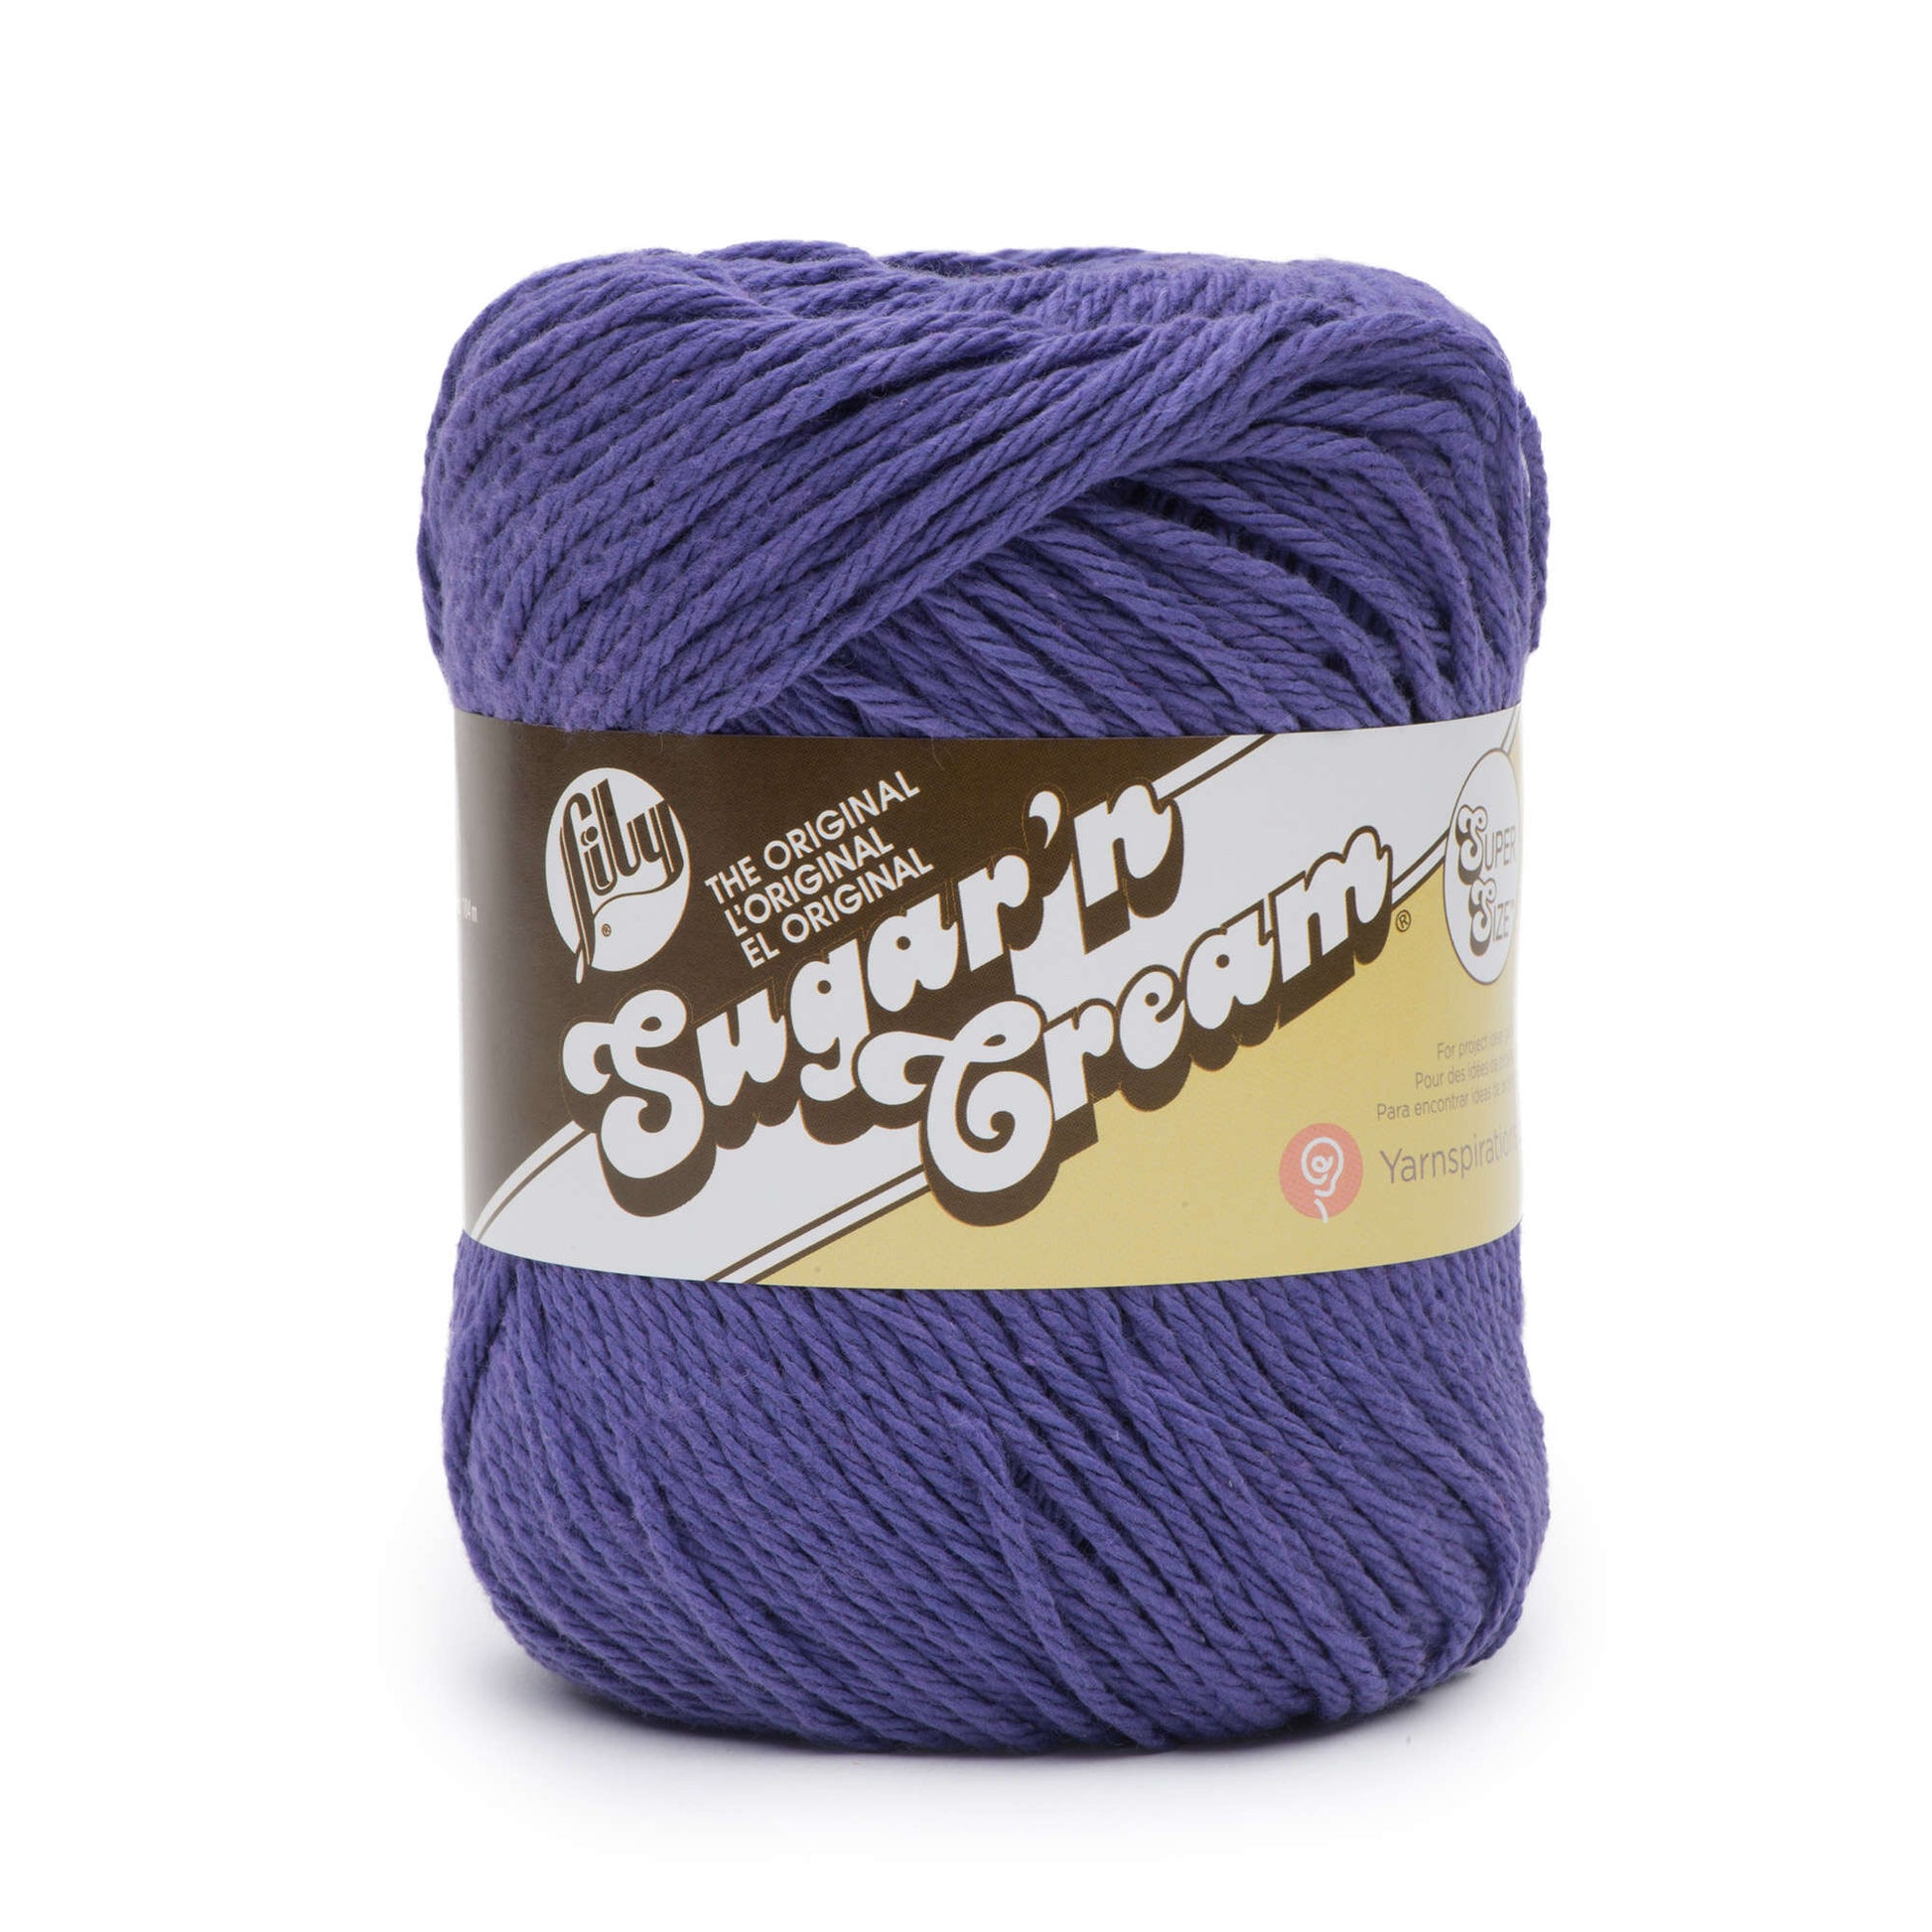 Lily Sugar 'n Cream Yarn in Canada, Free Shipping at